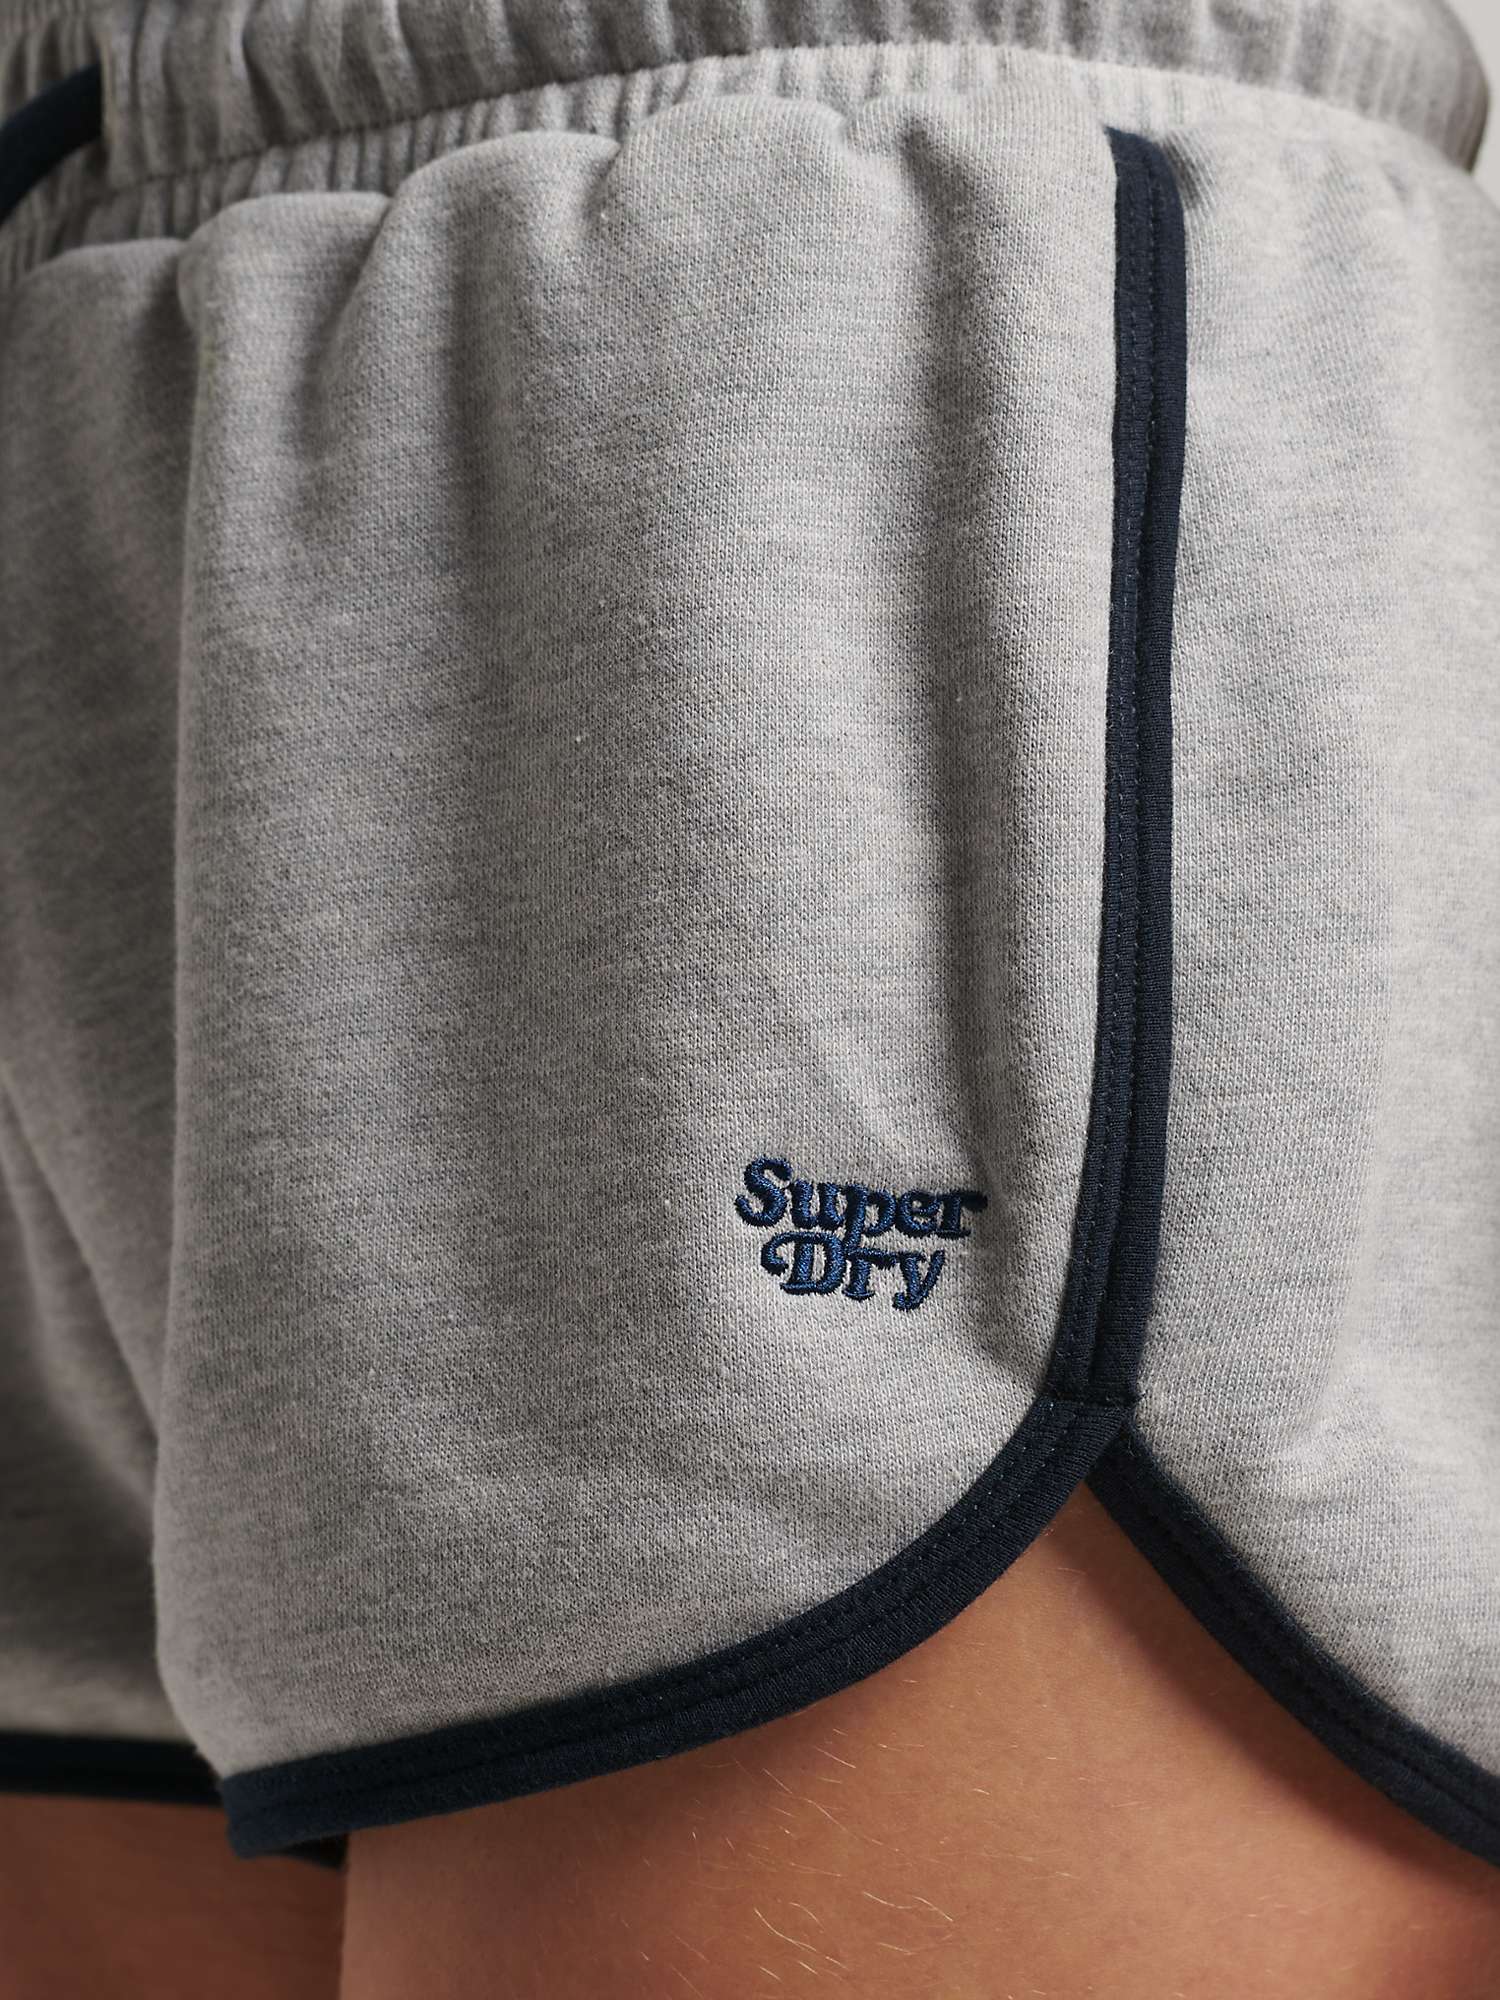 Buy Superdry Vintage Jersey Racer Shorts Online at johnlewis.com